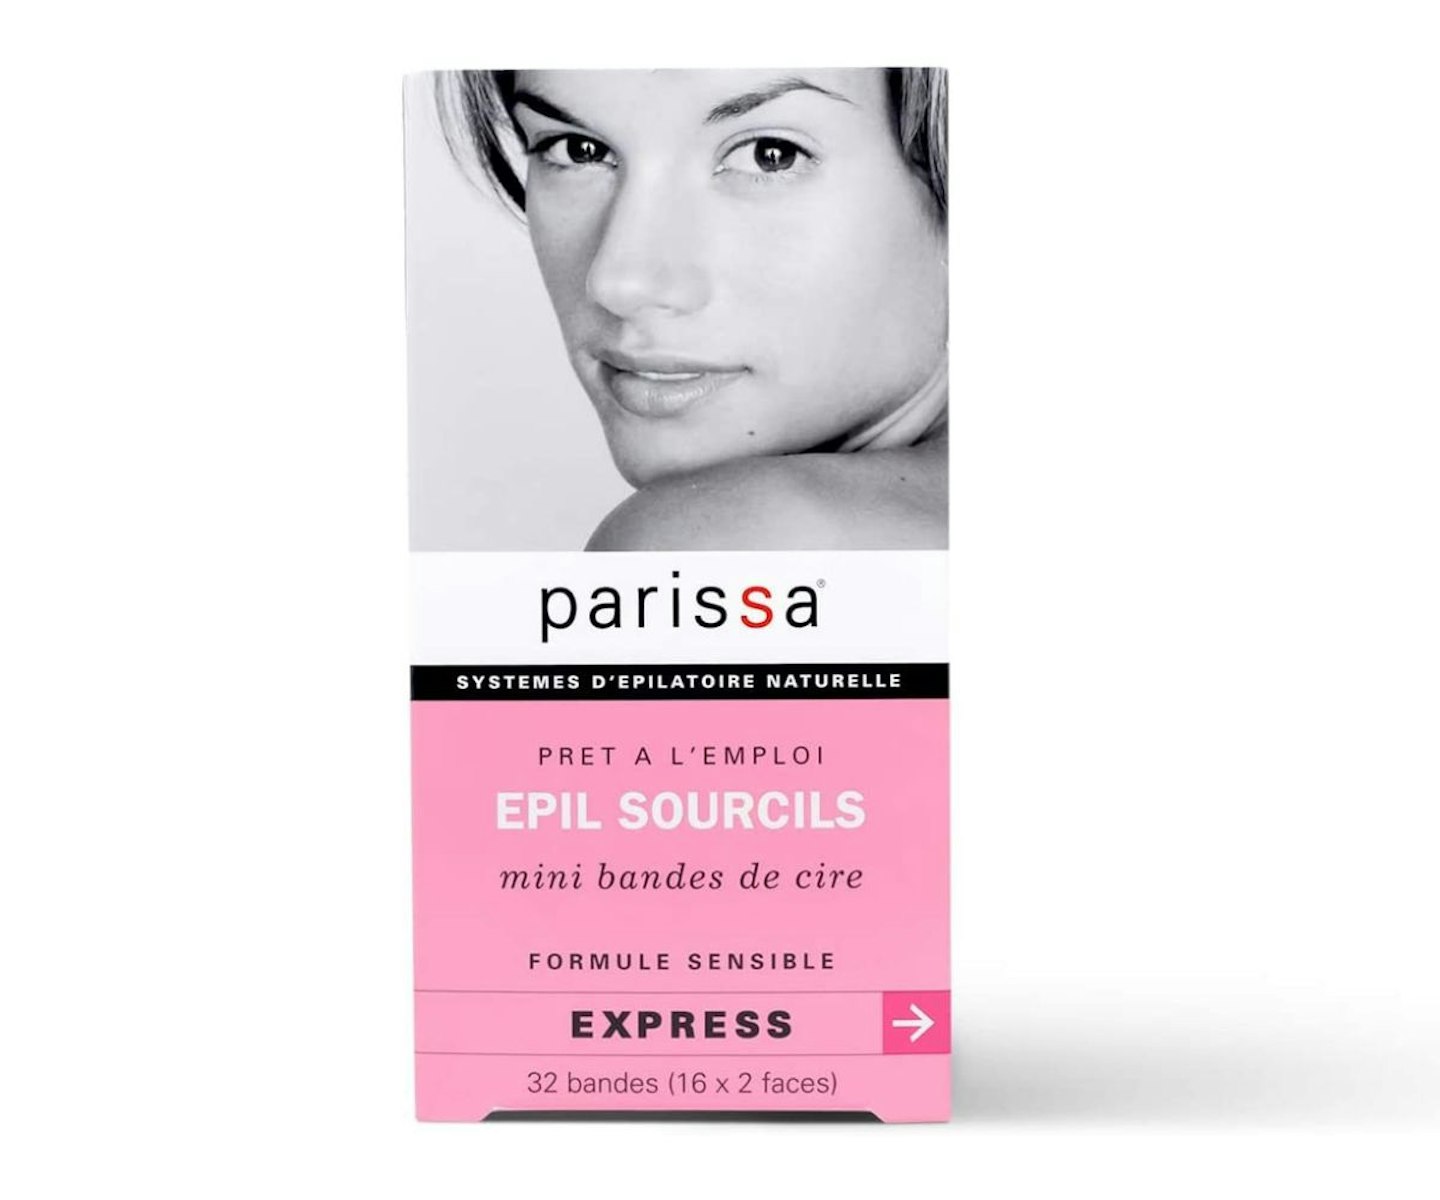 Parissa Eyebrow Wax Strips